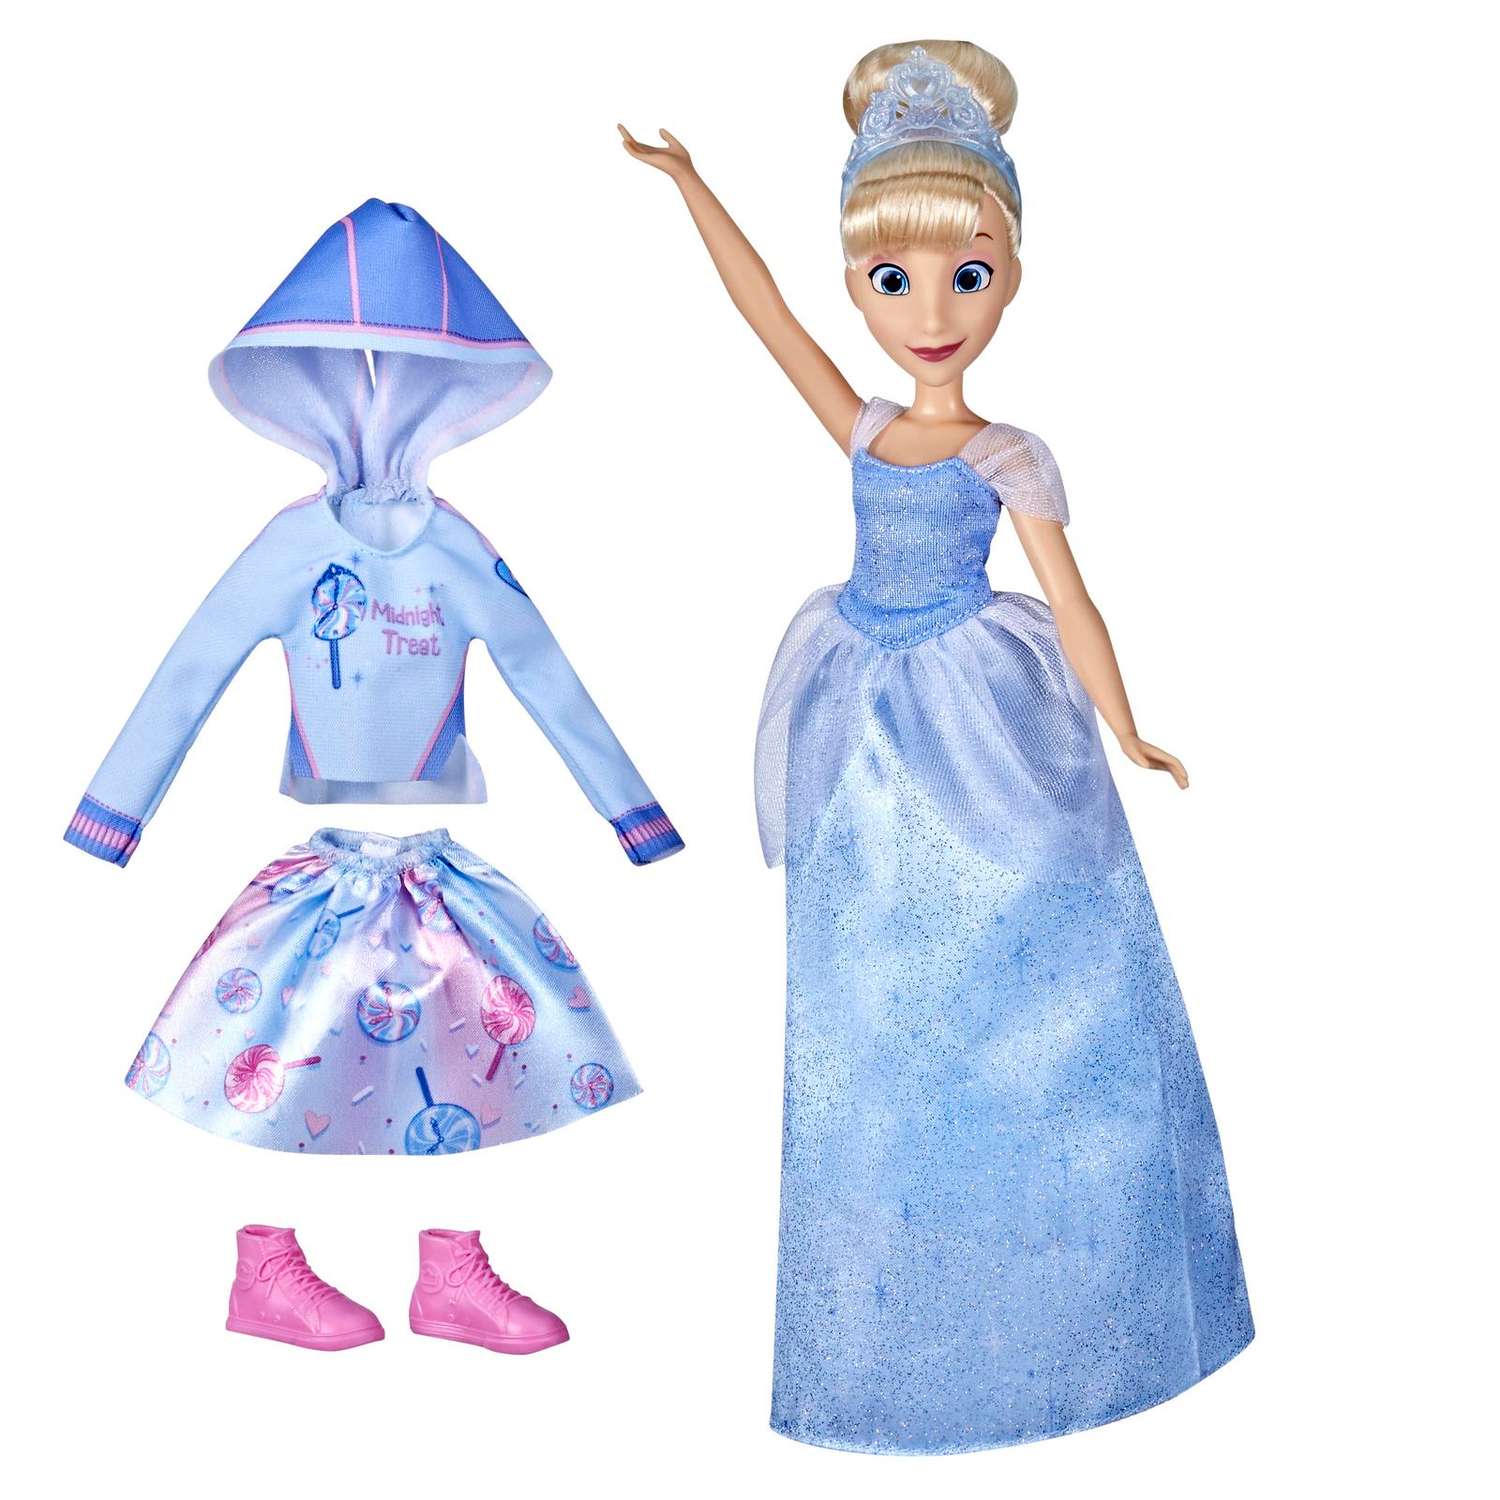 Кукла Disney Princess Hasbro Комфи Золушка 2наряда F23655X0 F23655X0 - фото 1